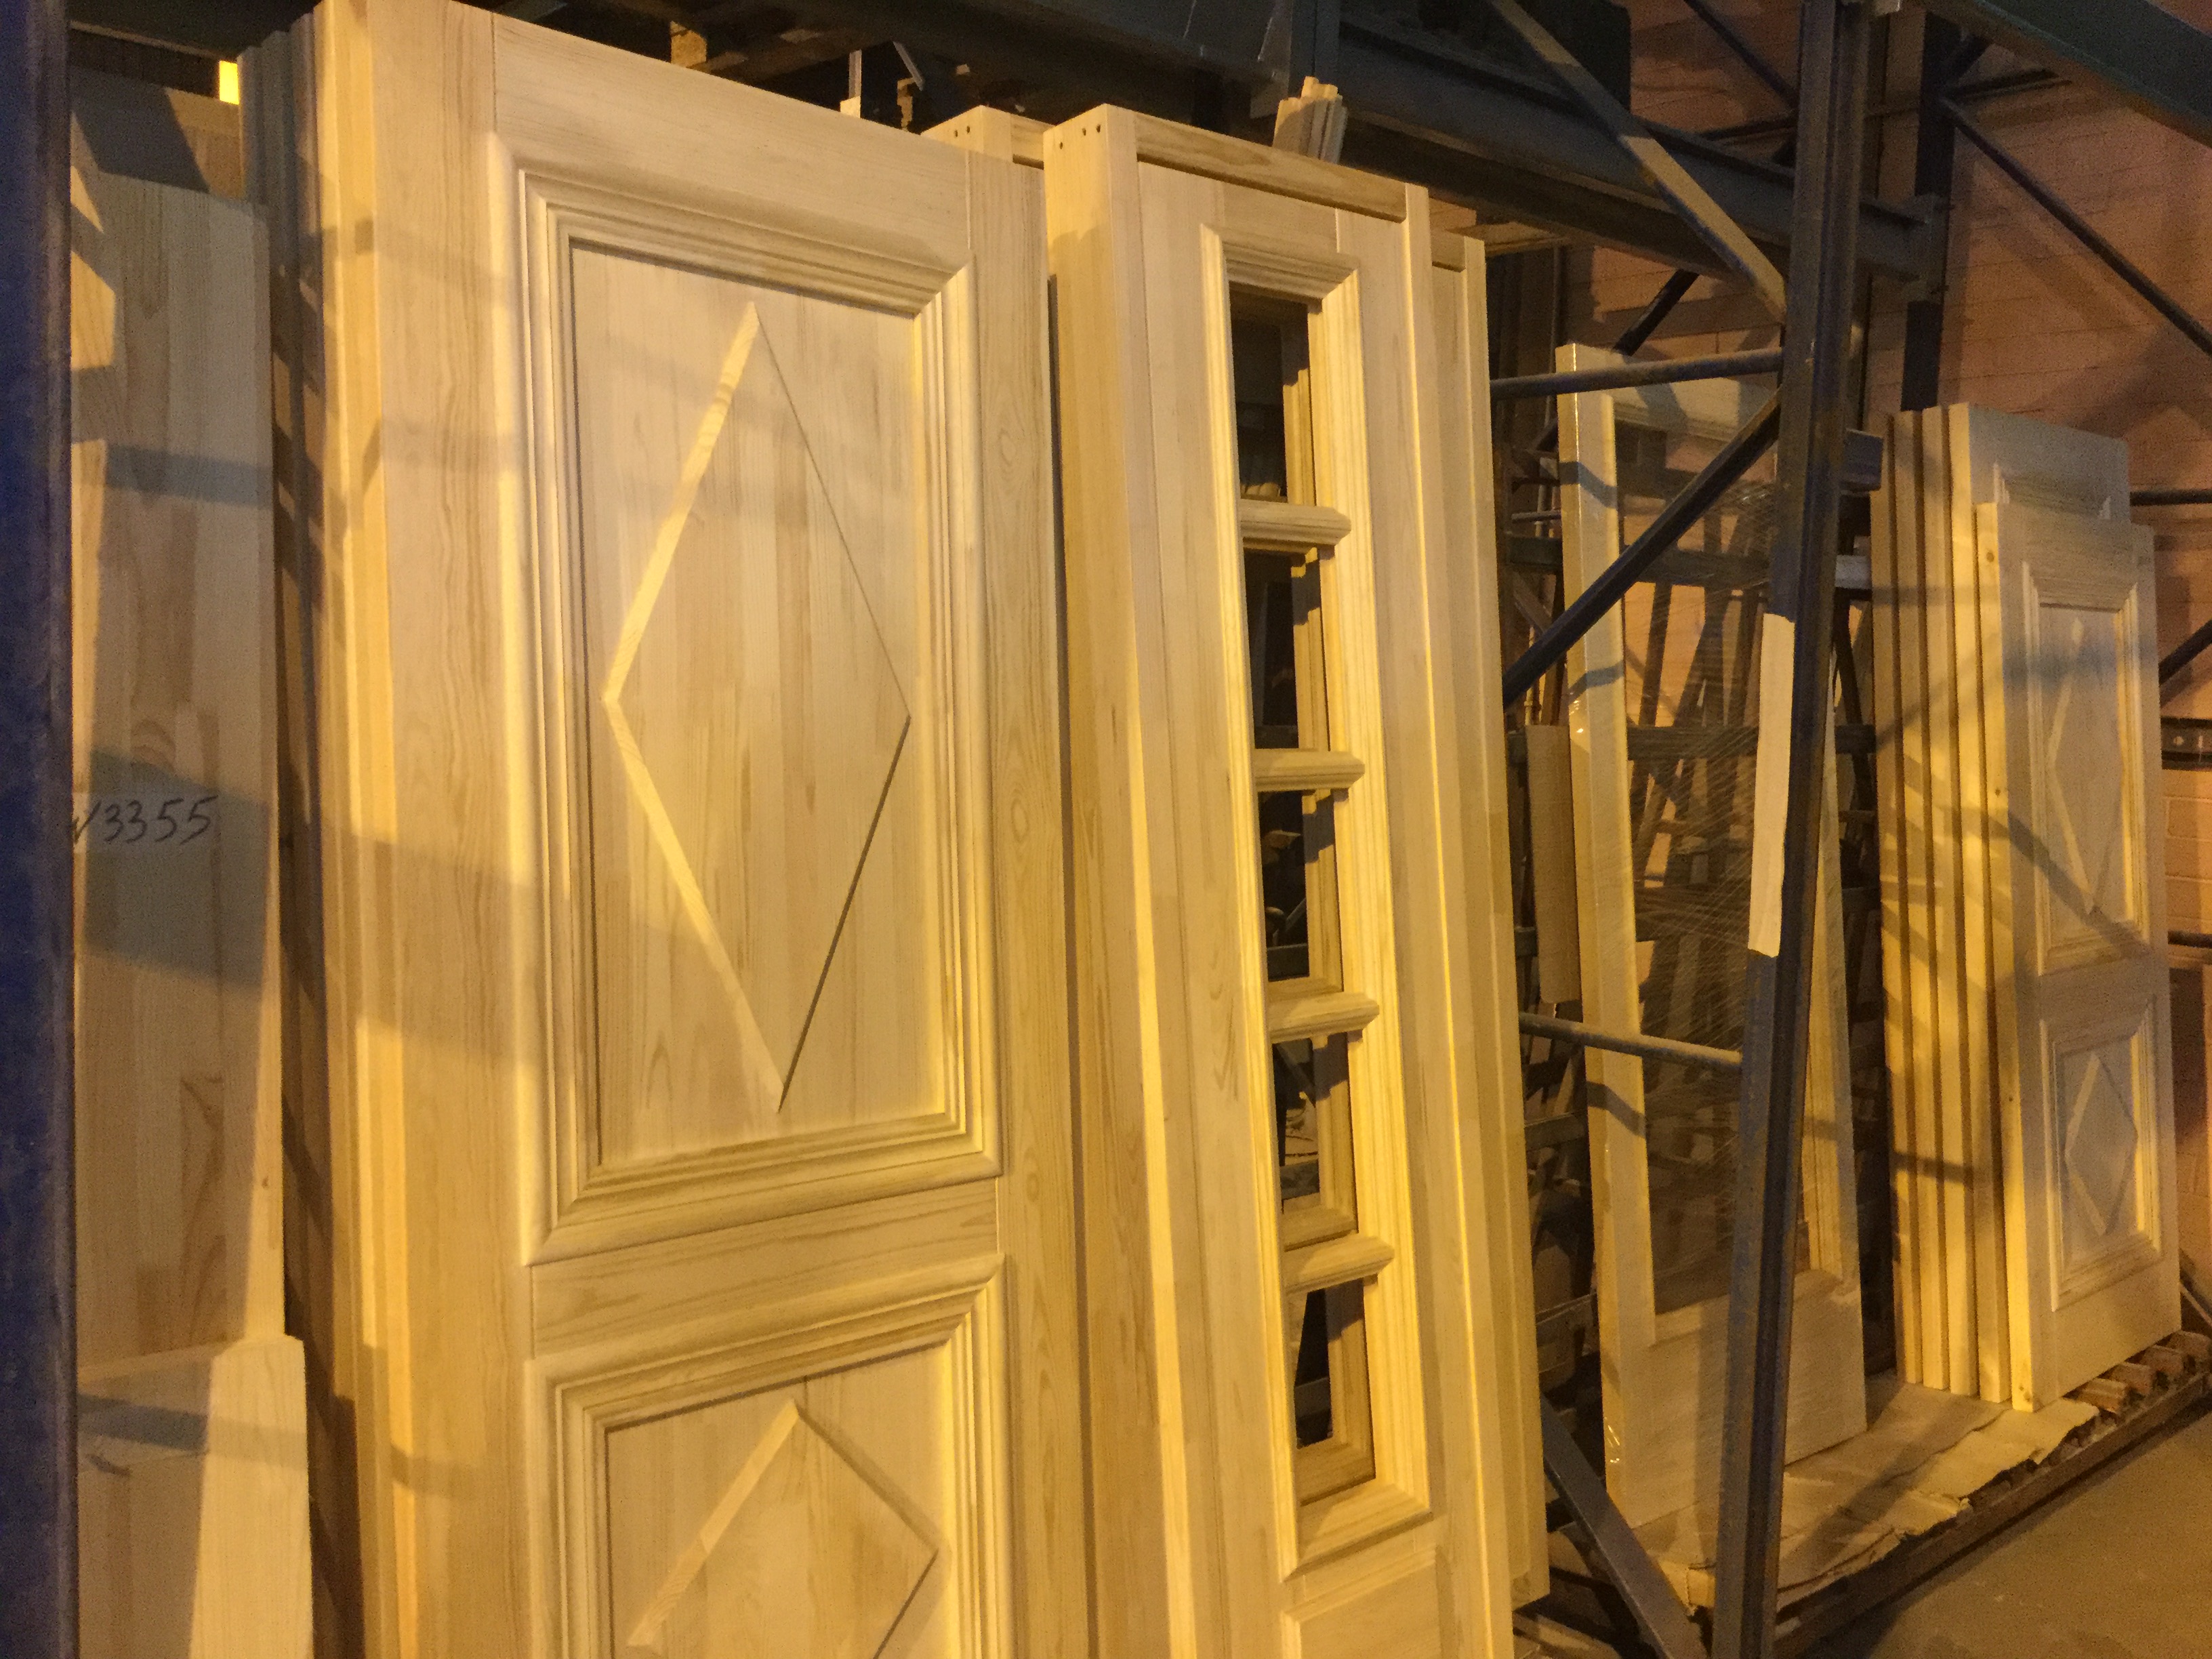 Технология изготовления деревянных межкомнатных дверей